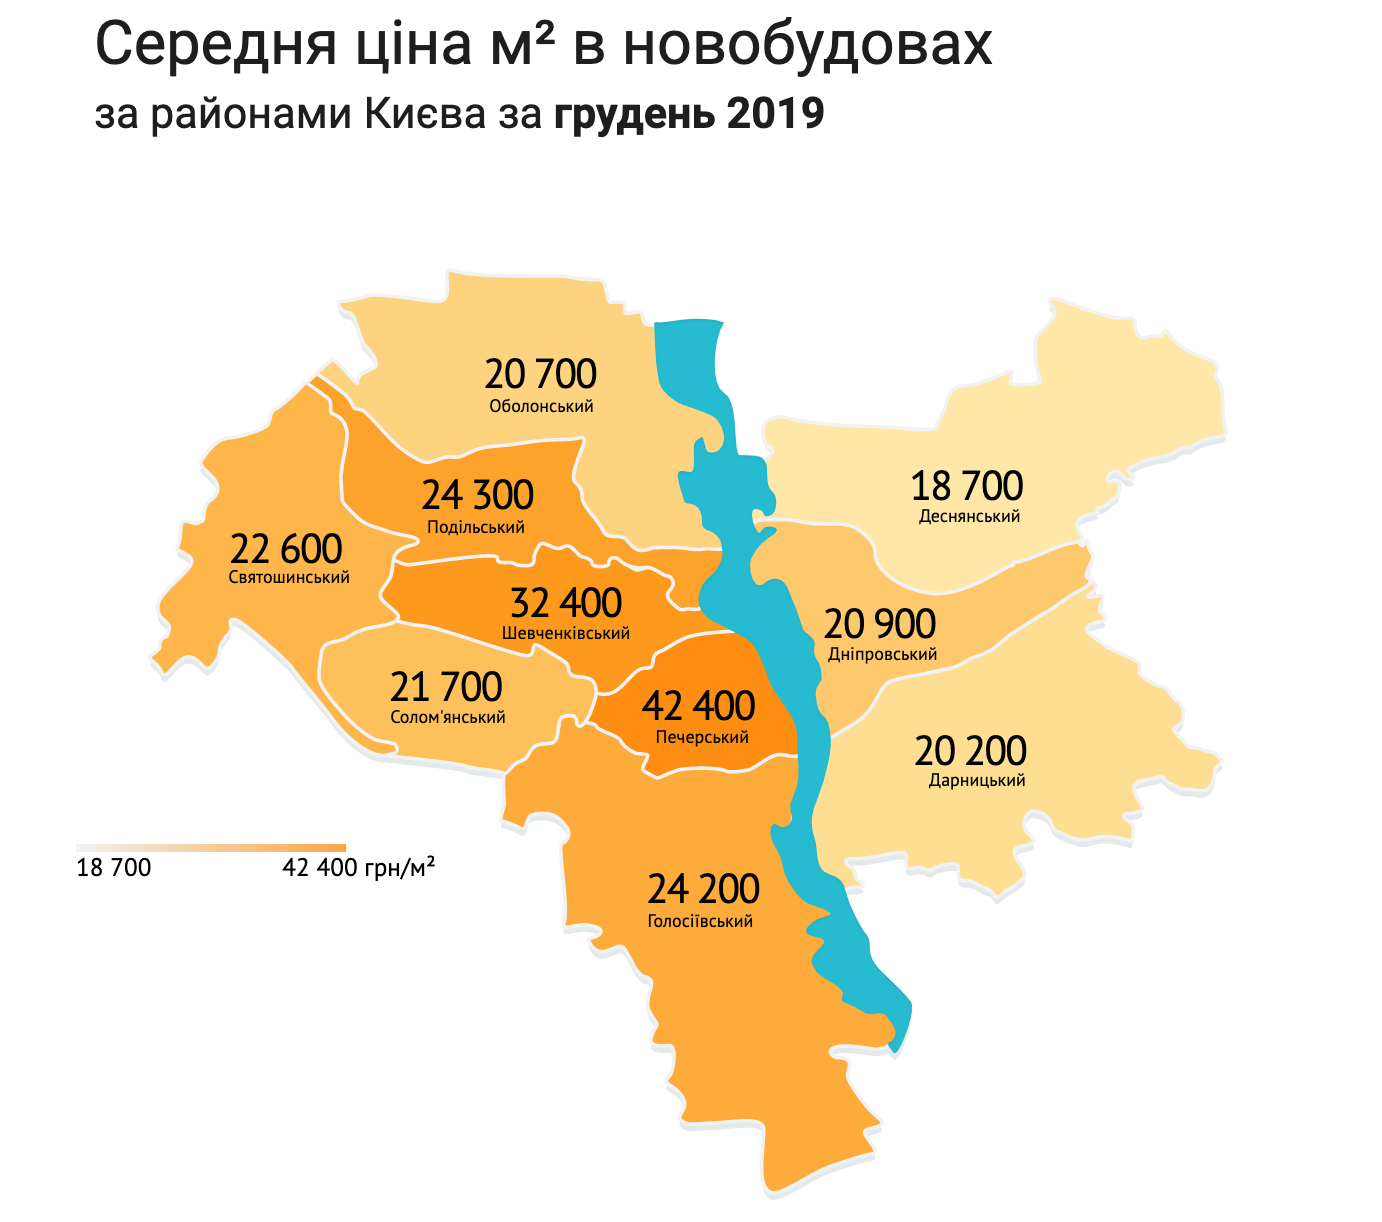 Итоги рынка недвижимости 2019 средняя цена по районам Киева в гривне